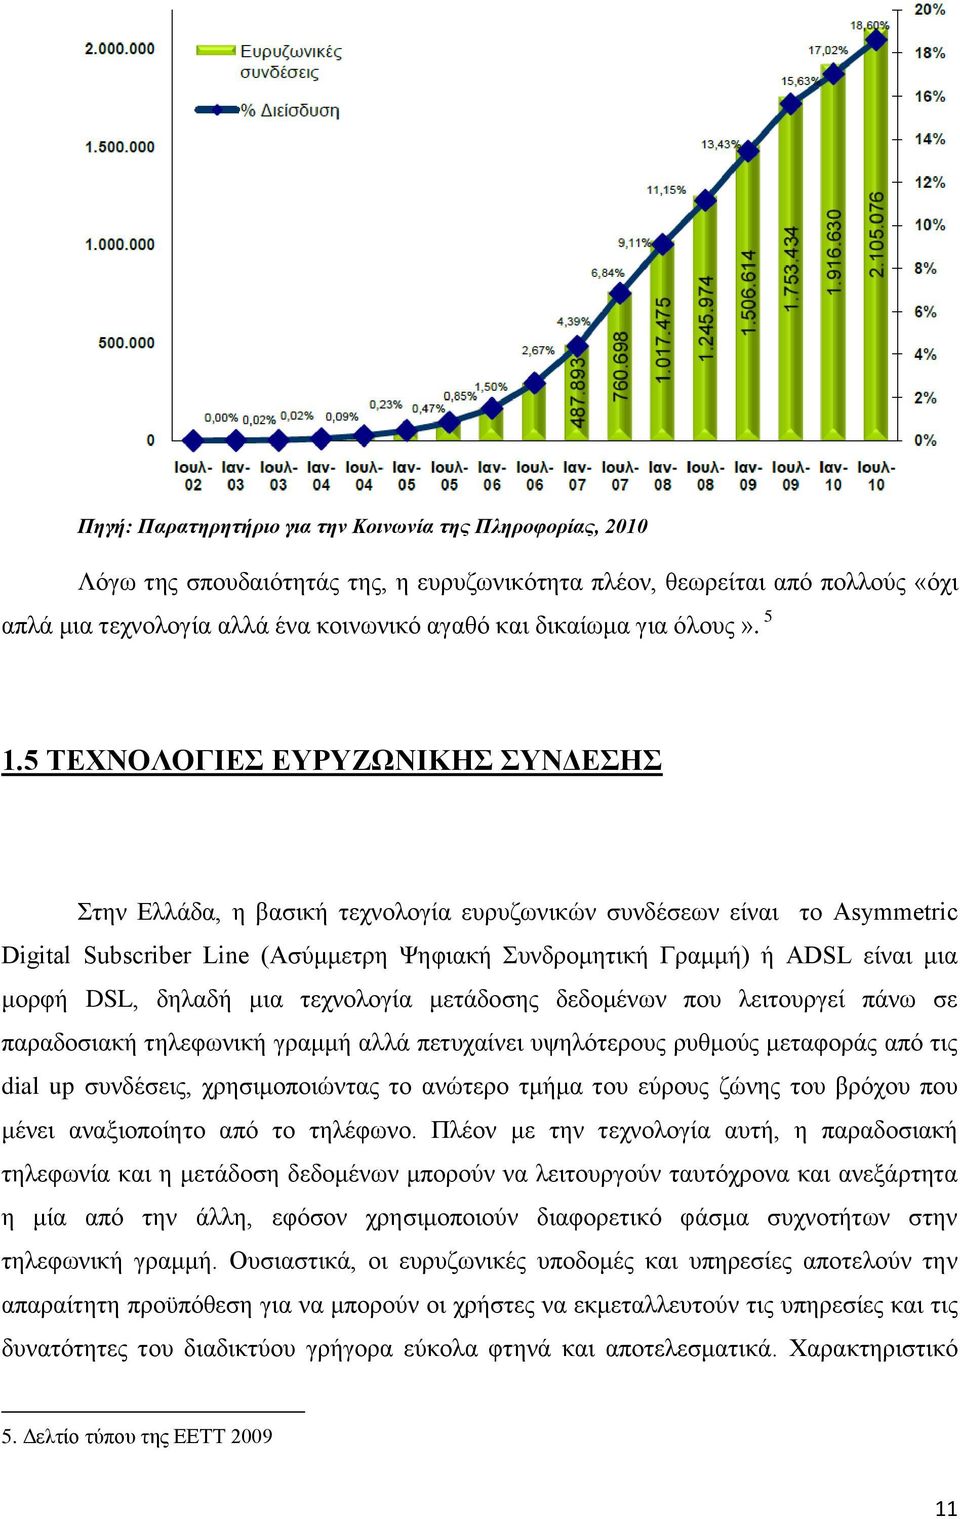 5 ΤΕΧΝΟΛΟΓΙΕΣ ΕΥΡΥΖΩΝΙΚΗΣ ΣΥΝΔΕΣΗΣ Στην Ελλάδα, η βασική τεχνολογία ευρυζωνικών συνδέσεων είναι τo Asymmetric Digital Subscriber Line (Ασύμμετρη Ψηφιακή Συνδρομητική Γραμμή) ή ADSL είναι μια μορφή